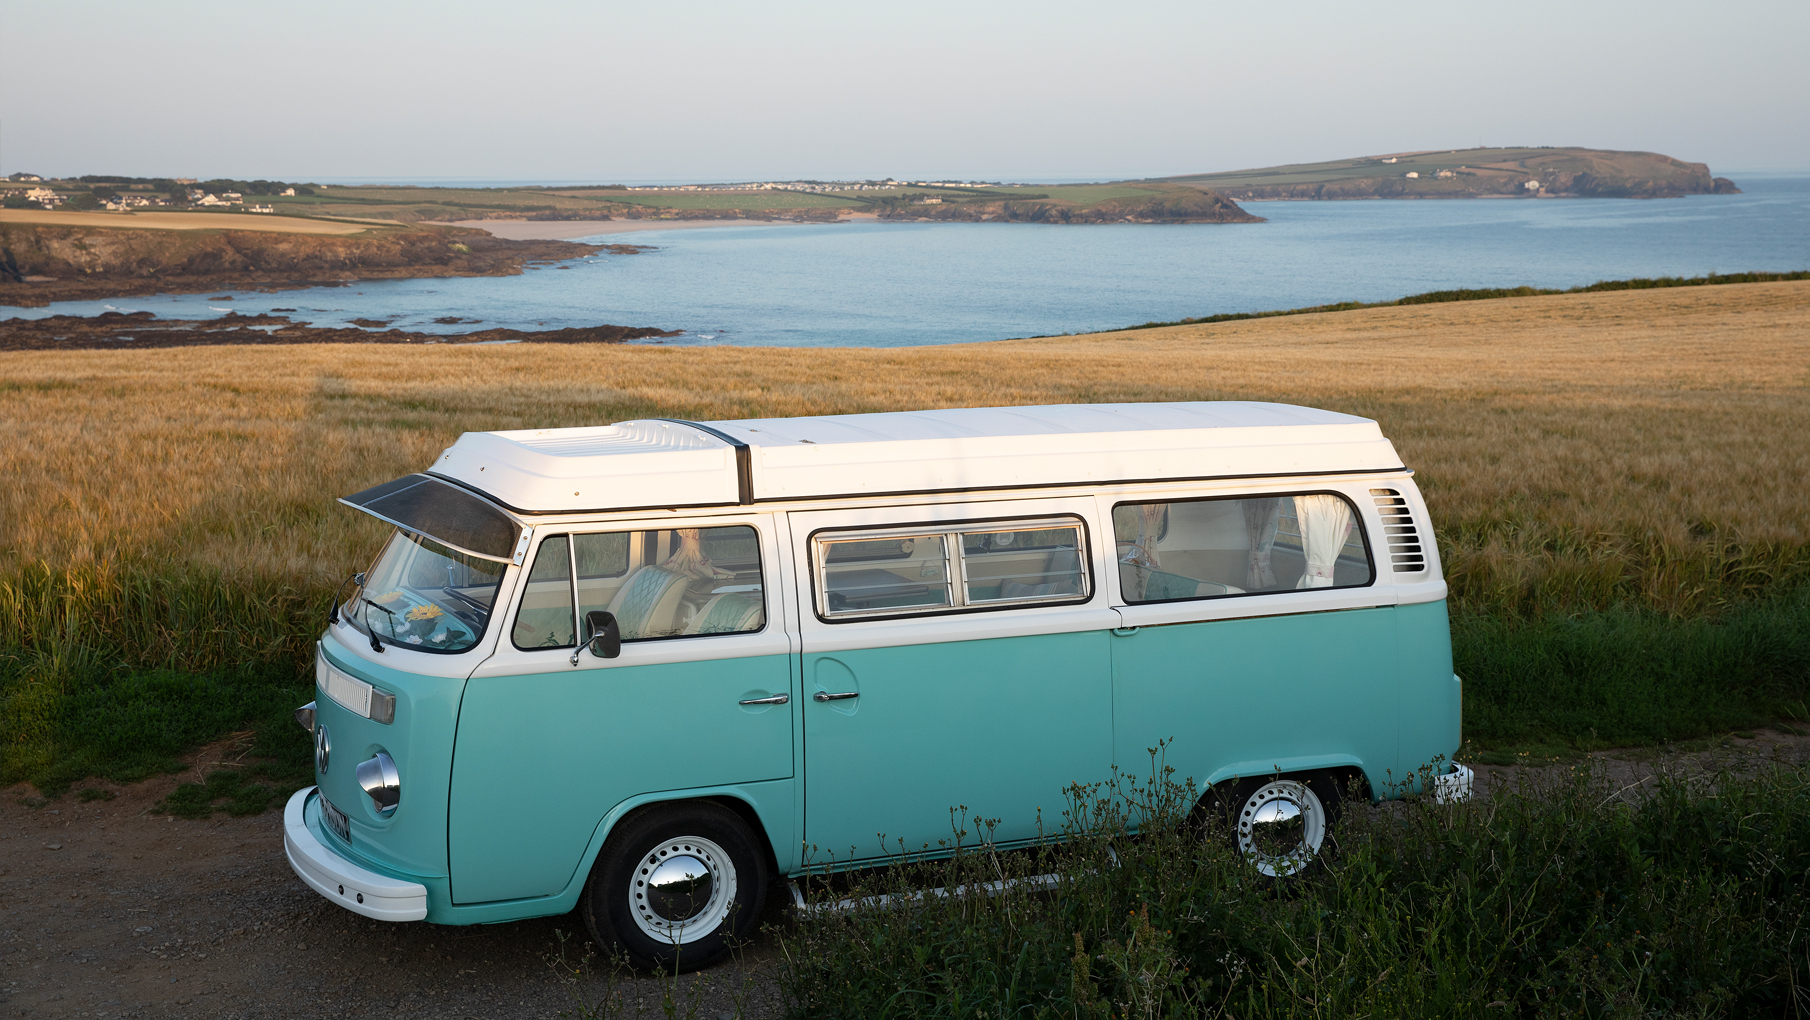 Our vintage VW camper van in Cornwall